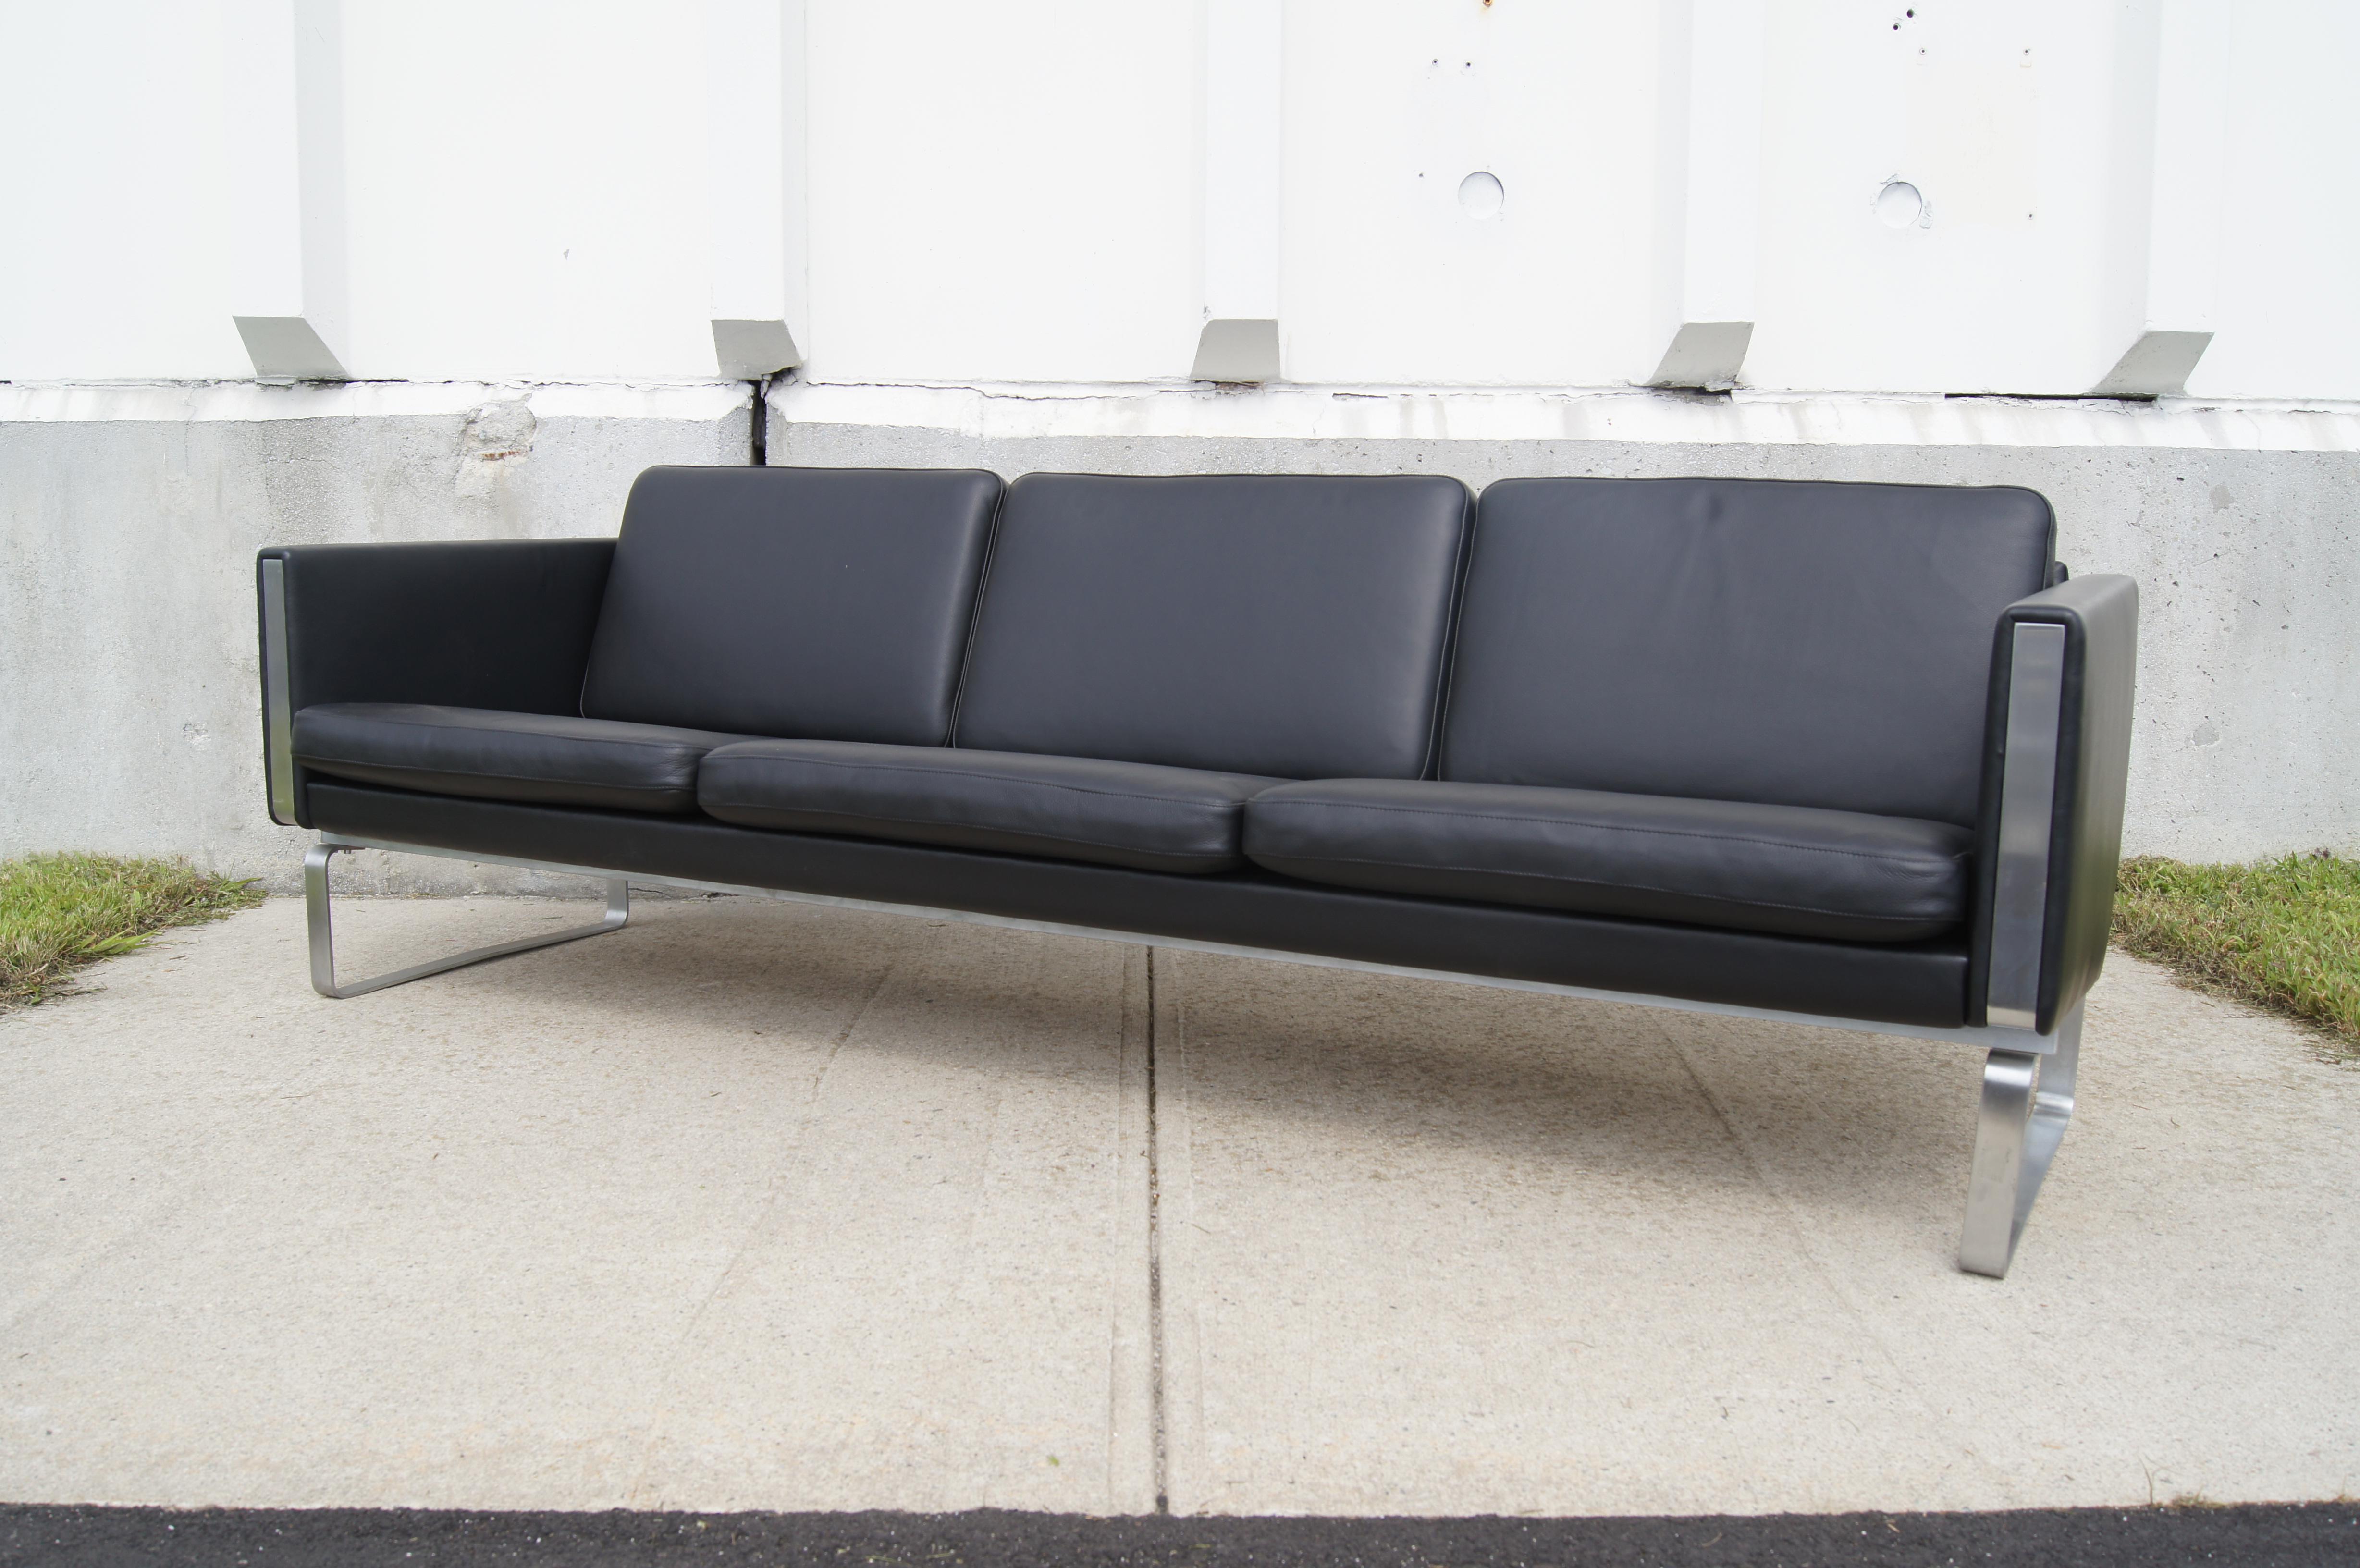 Dieses von Hans Wegner in den frühen 1970er Jahren entworfene, äußerst bequeme Sofa aus schwarzem Leder steht auf einem Sockel aus poliertem Edelstahl, der sich bis zur Vorder- und Rückseite der gepolsterten Armlehnen fortsetzt. 

Dieses zeitlose